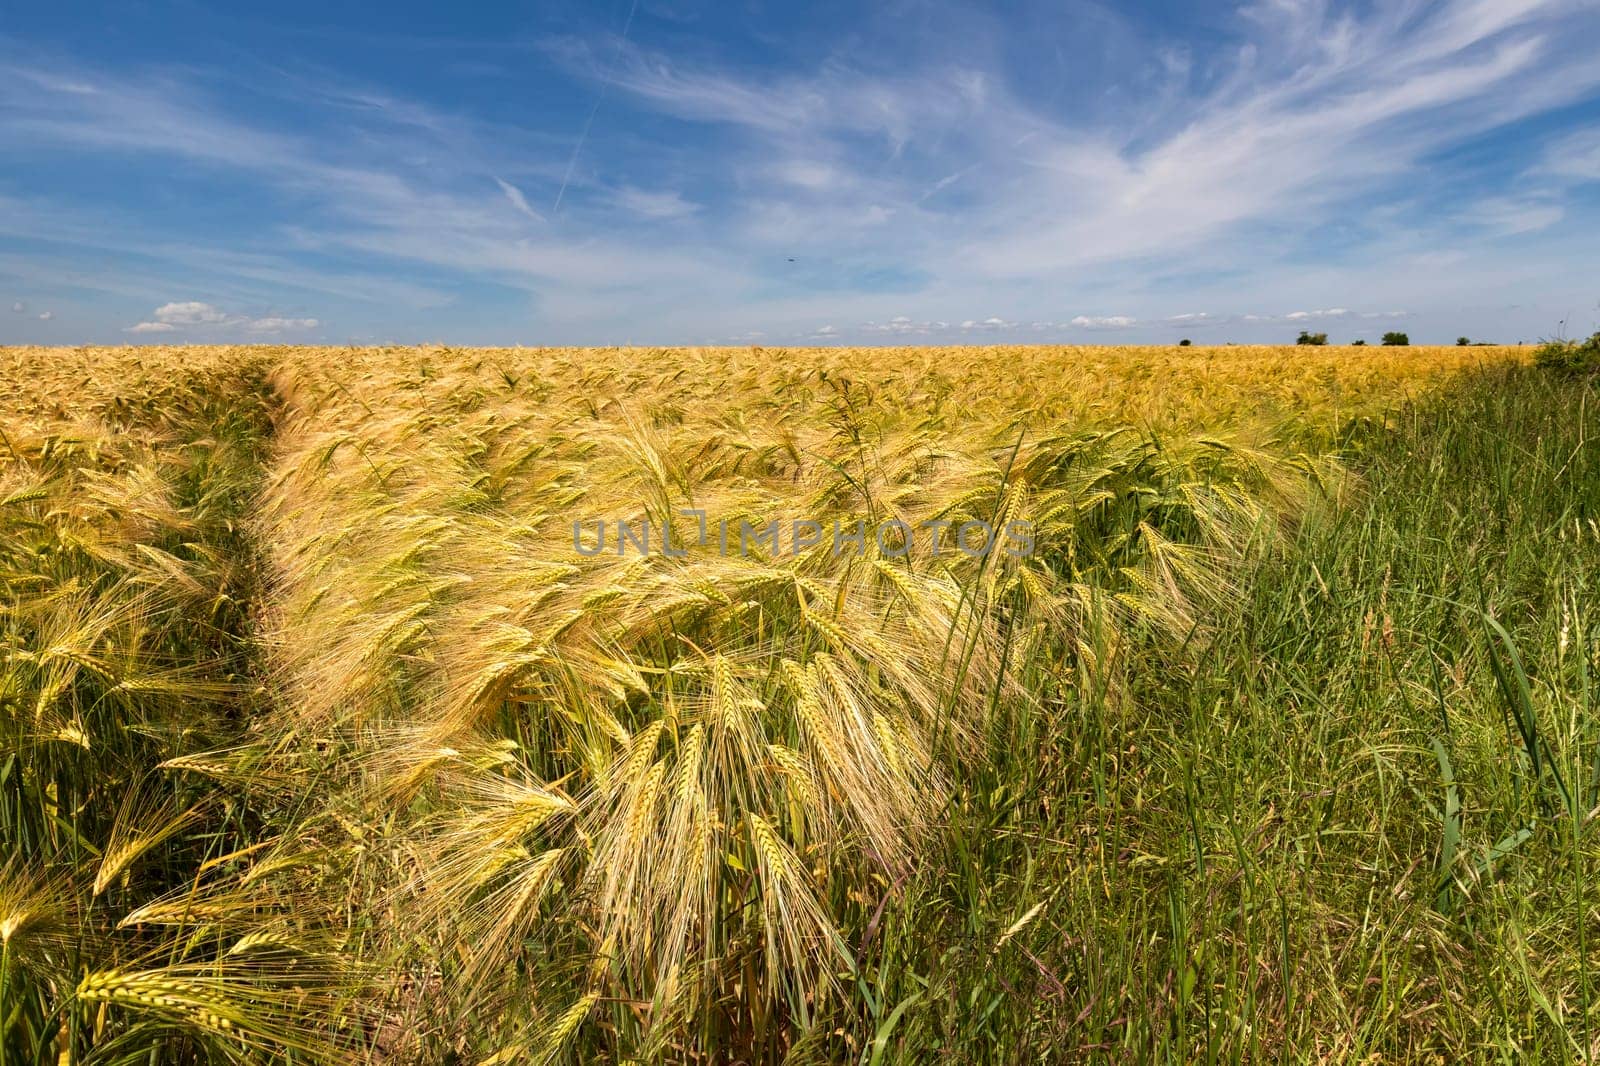 Ears of wheat, the golden ripe field of wheat